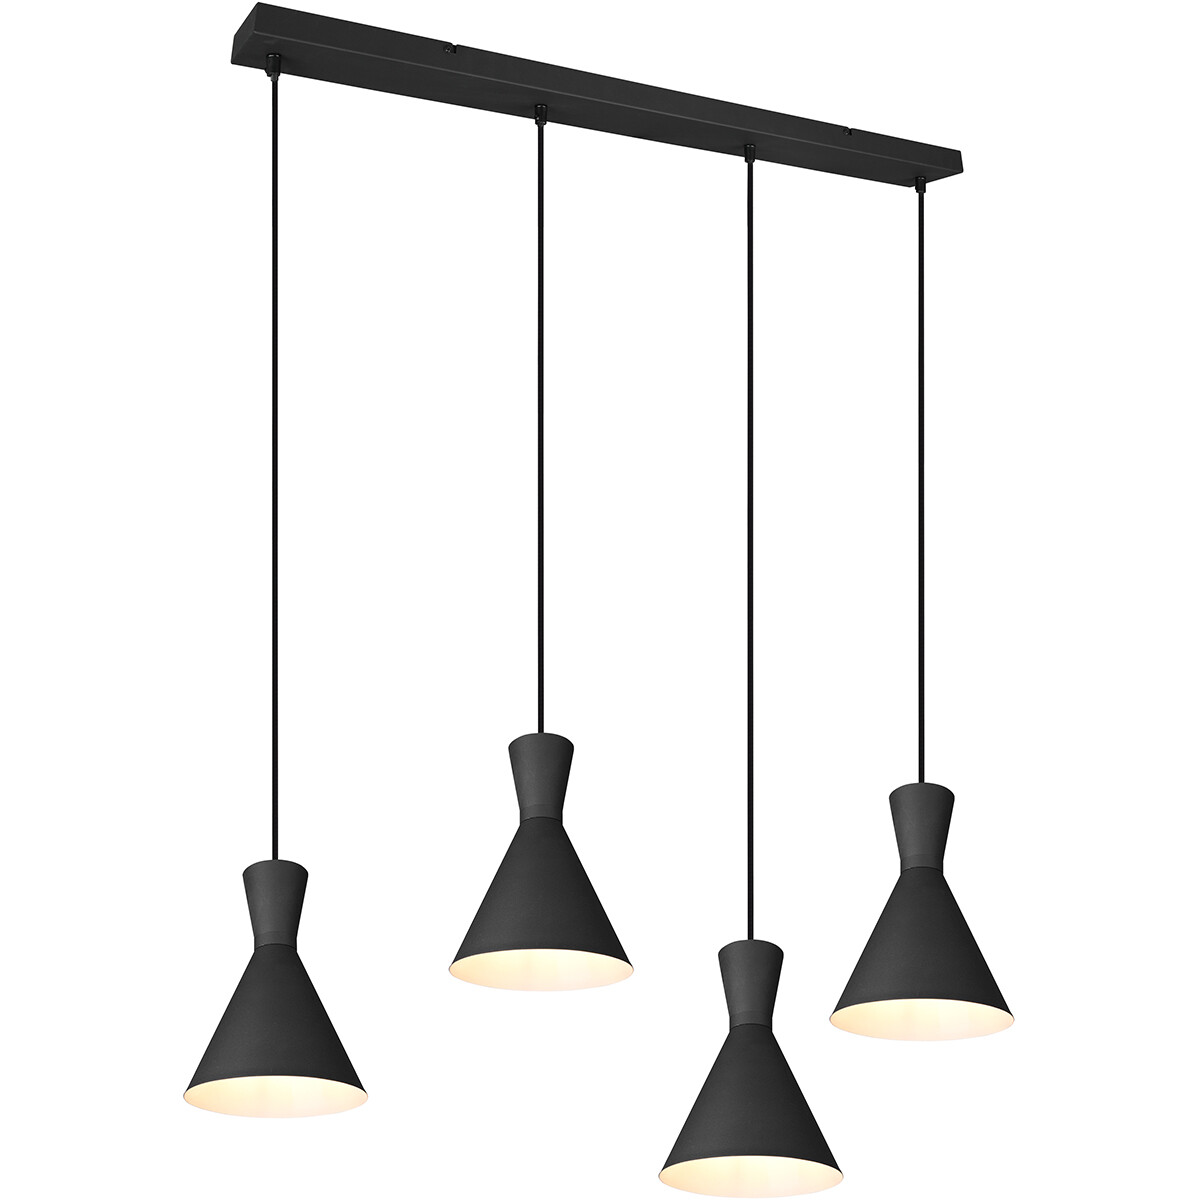 LED Hanglamp - Trion Ewomi - E27 Fitting - 4-lichts - Rechthoek - Mat Zwart - Aluminium product afbeelding